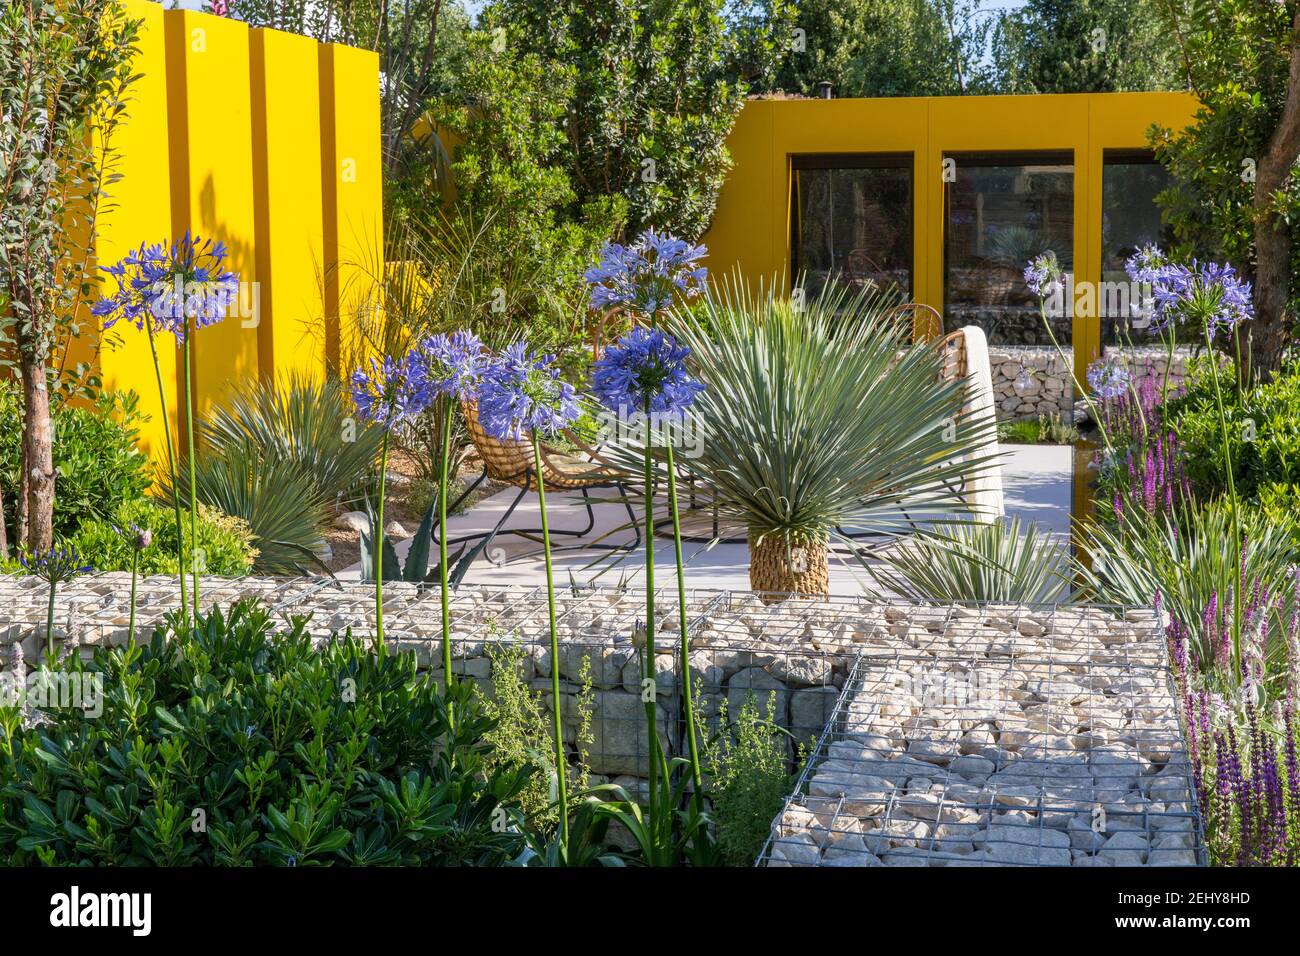 studio garden home Office in giardino mediterraneo con patio in pietra pavimentato zona salotto - recinzione gialla e muro di gabion con agapanthus Blue Storm Foto Stock